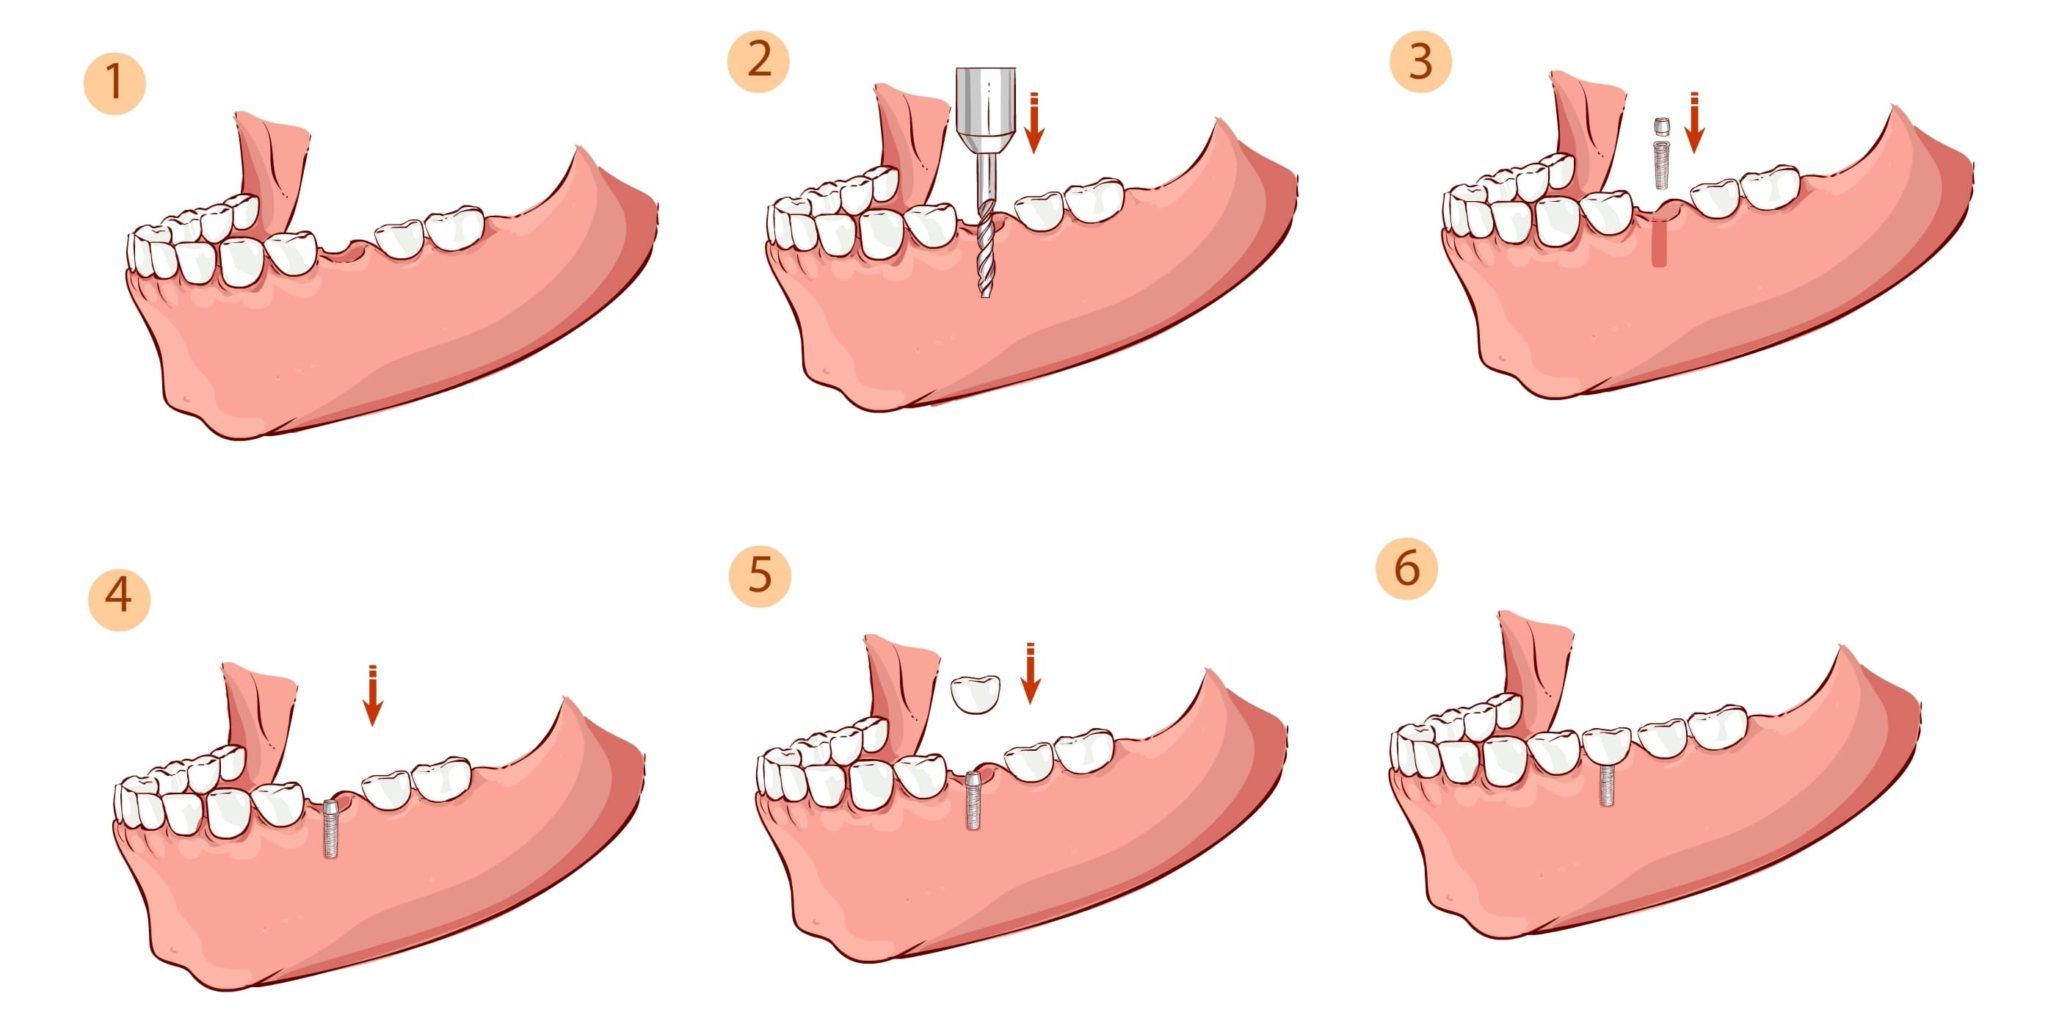 Зубы импланты поэтапно. Этапы имплантации зубов. Поэтапное имплантирование зубов. Двухэтапная методика имплантации зубов.